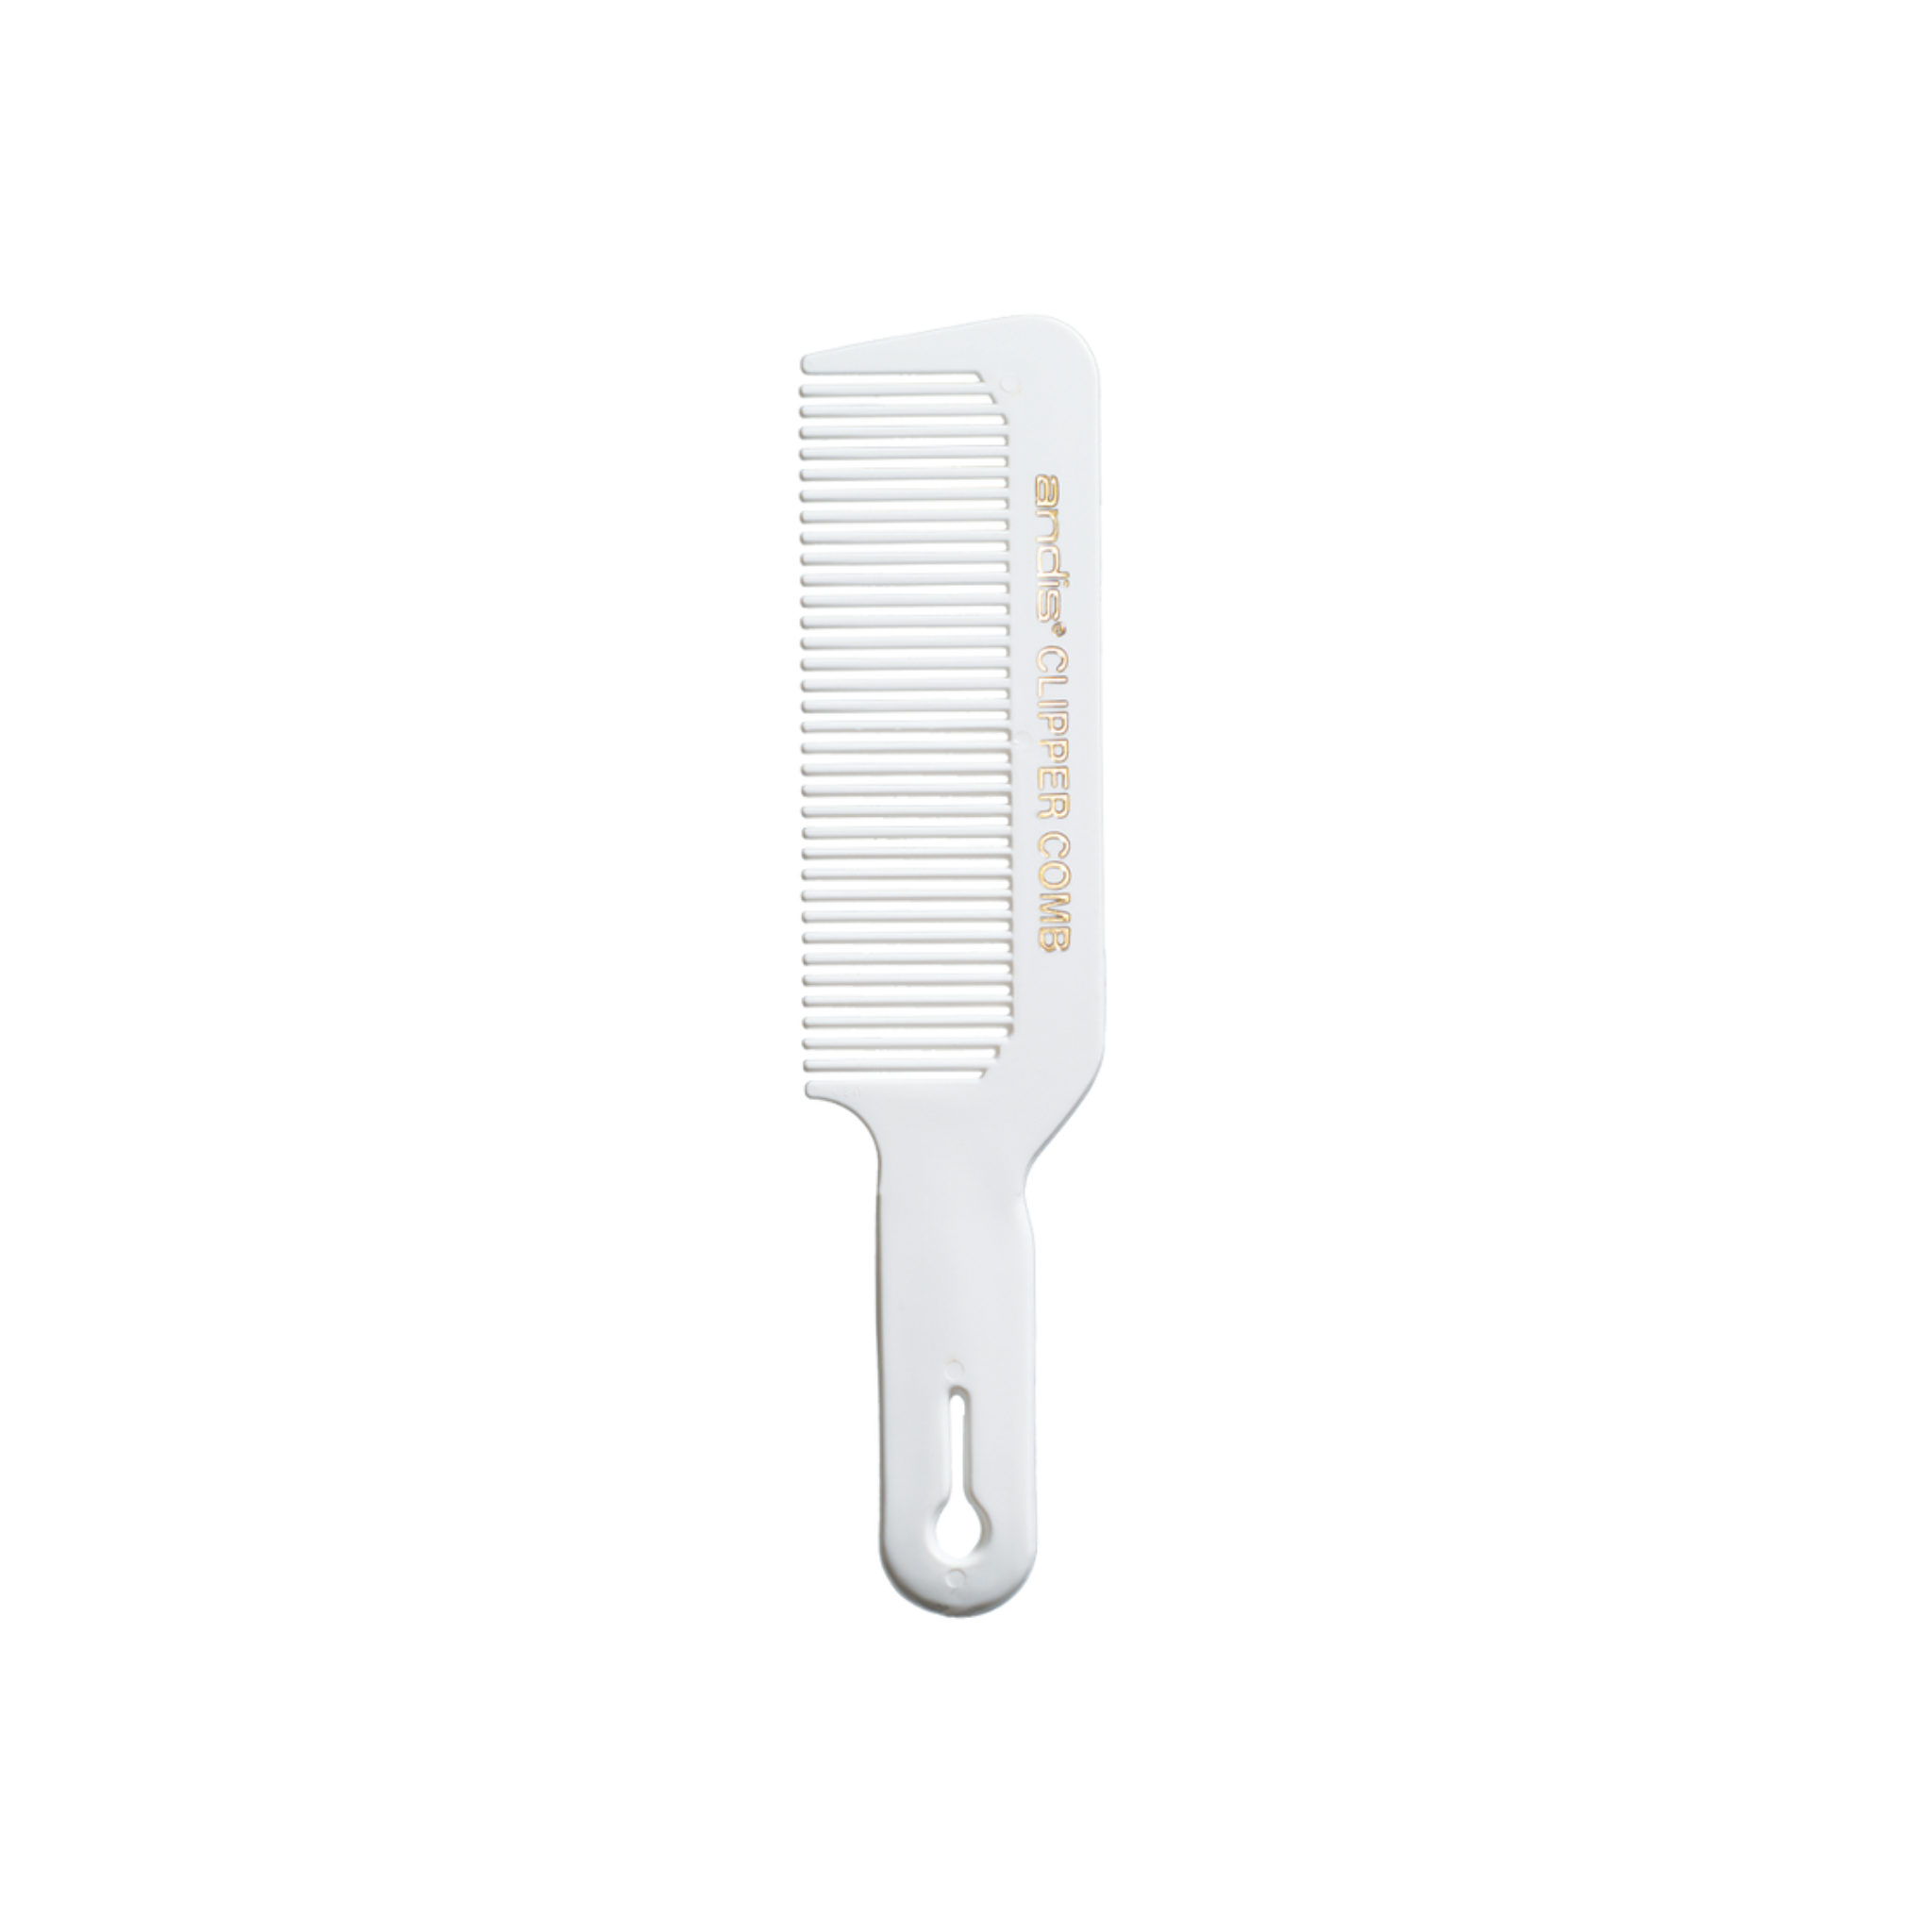 Clipper Comb (White)